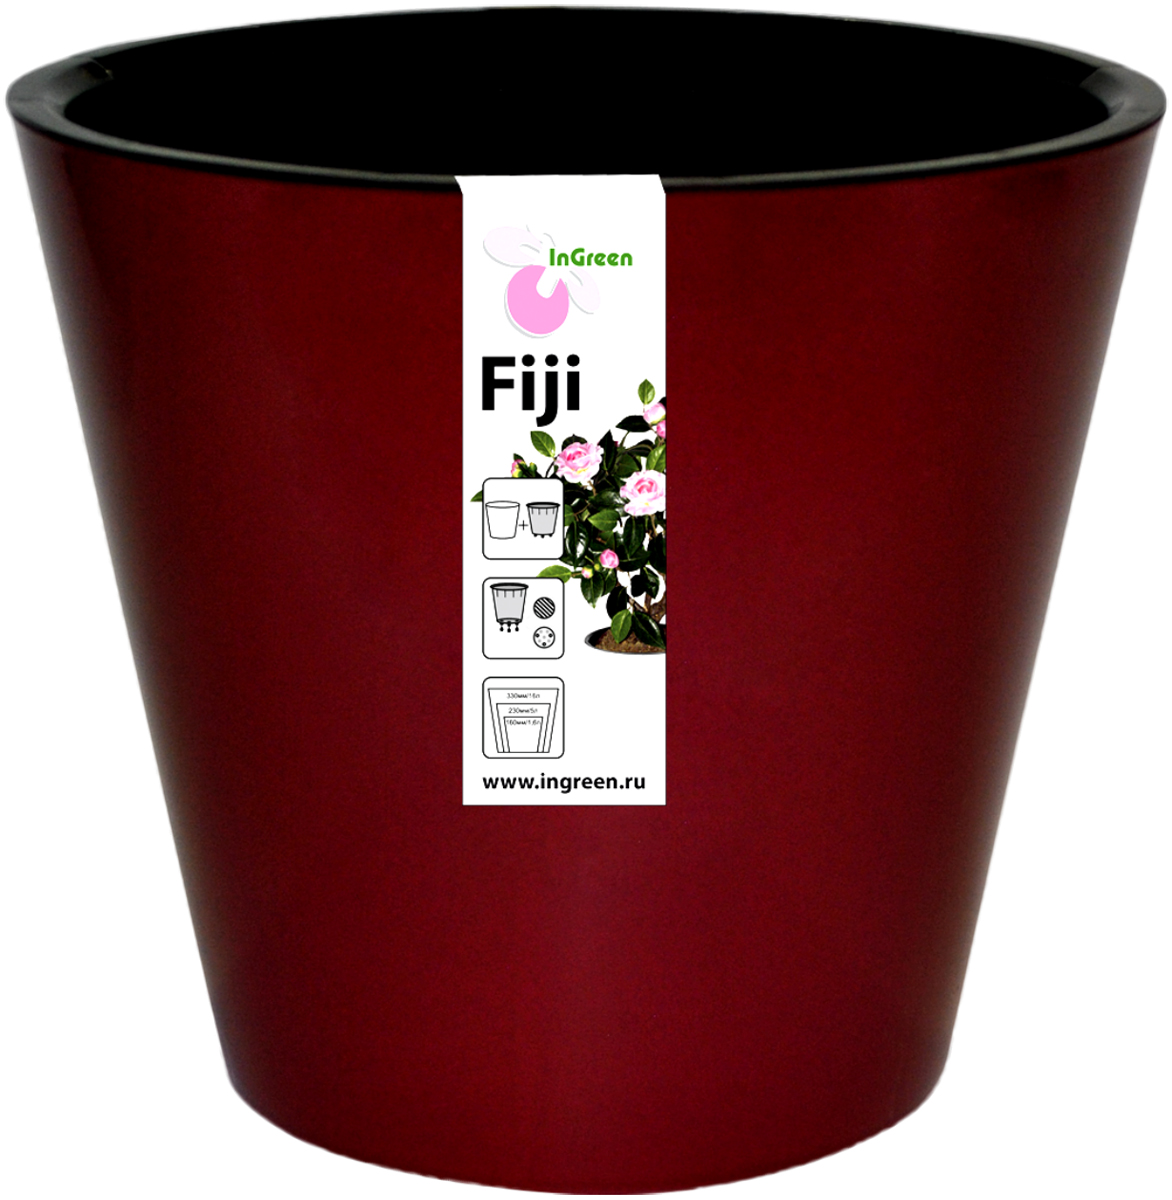 фото Горшок для цветов InGreen "Фиджи", с ситемой атополива, цвет: бордовый, диаметр 16 см